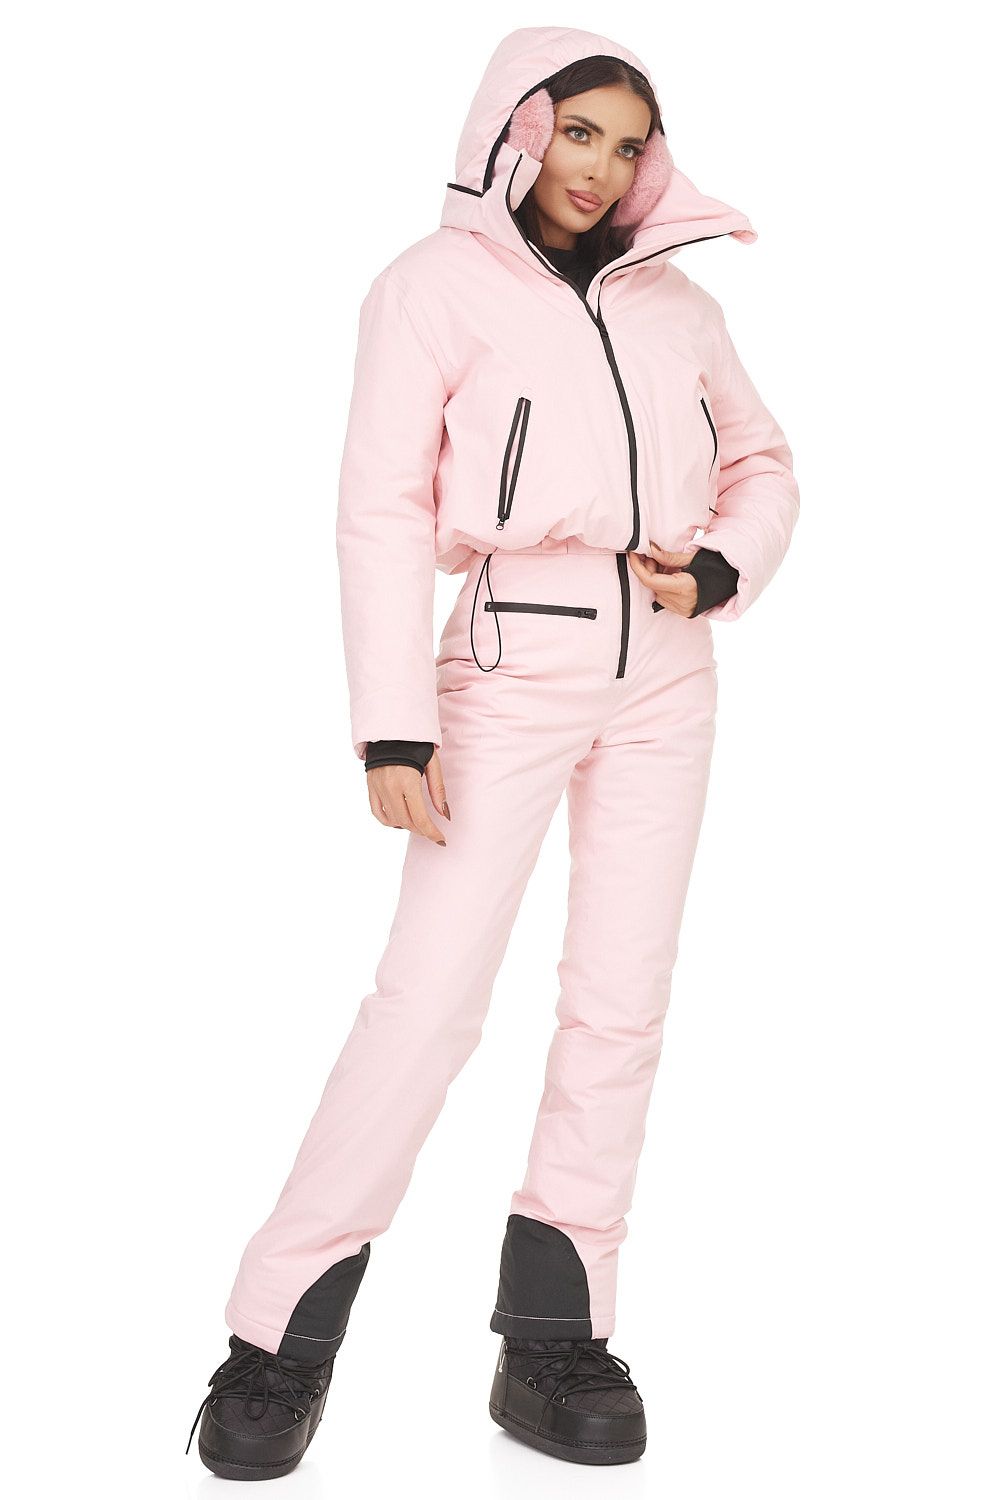 Costum ski casual roz Reasia Bogas